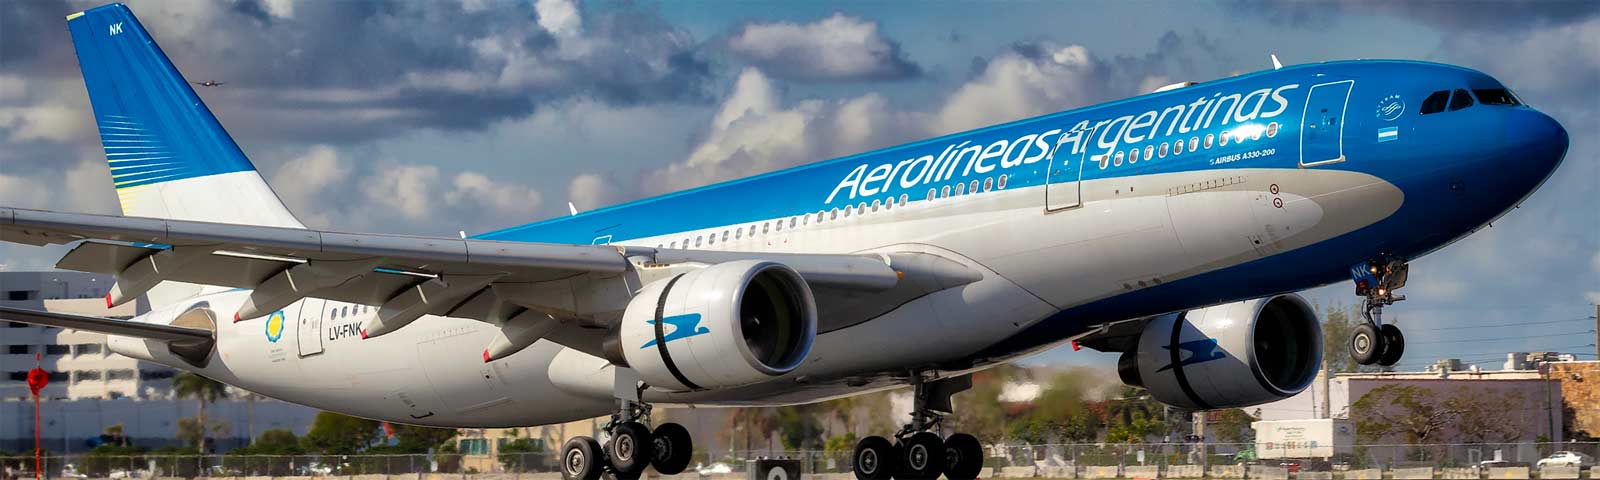 aeroplano in decollo della compagnia aerolinas argentinas